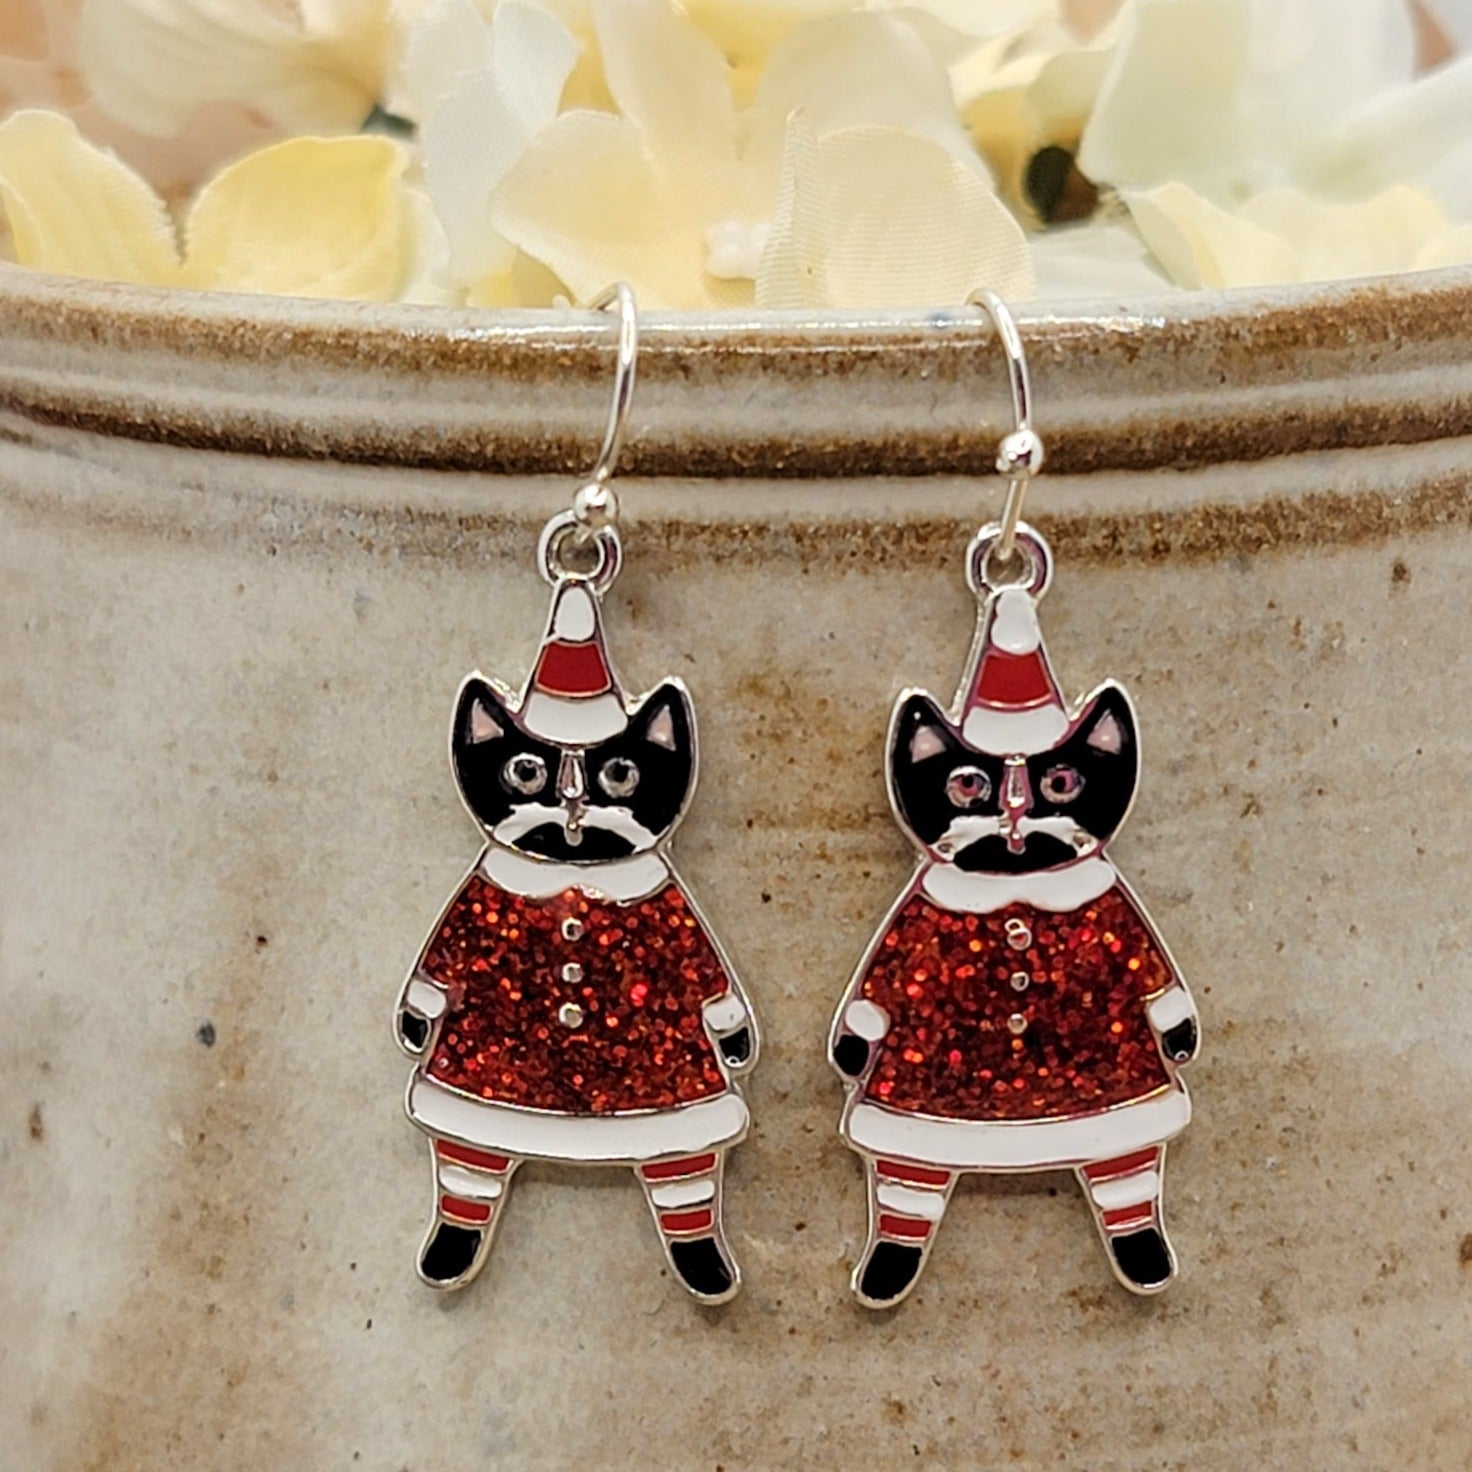 Whimsy Enamel Cat Christmas Earrings - Nicki Lynn Jewelry